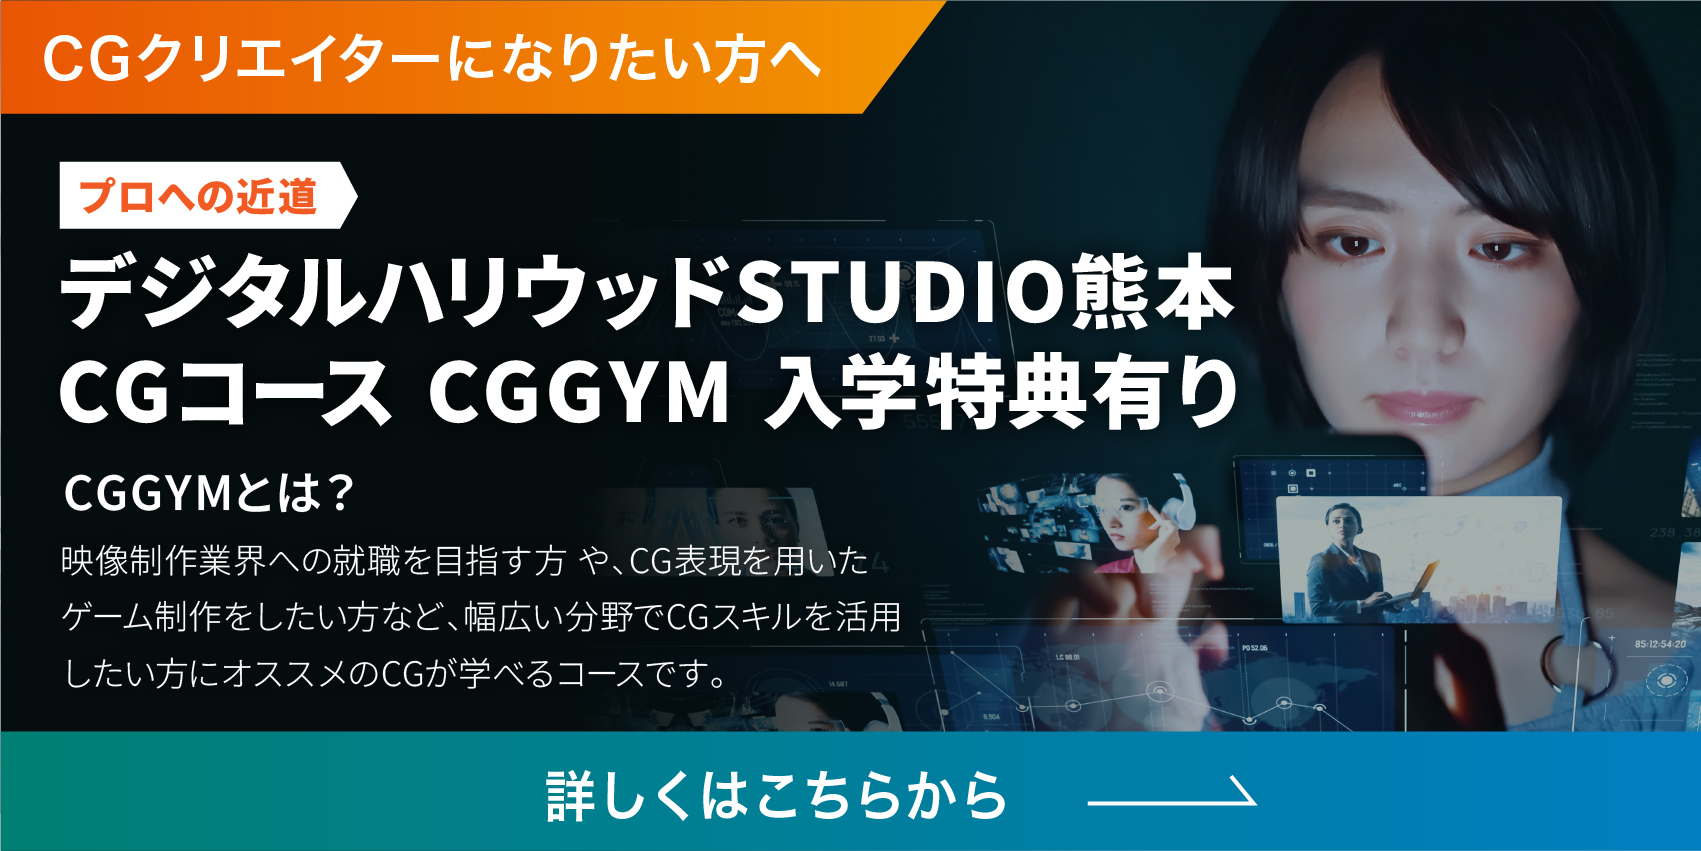 1年間でCGプロになりたい方へ。デジタルハリウッドSTUDIO熊本CGコースCGGYM入学特典有り。詳しくはこちらから